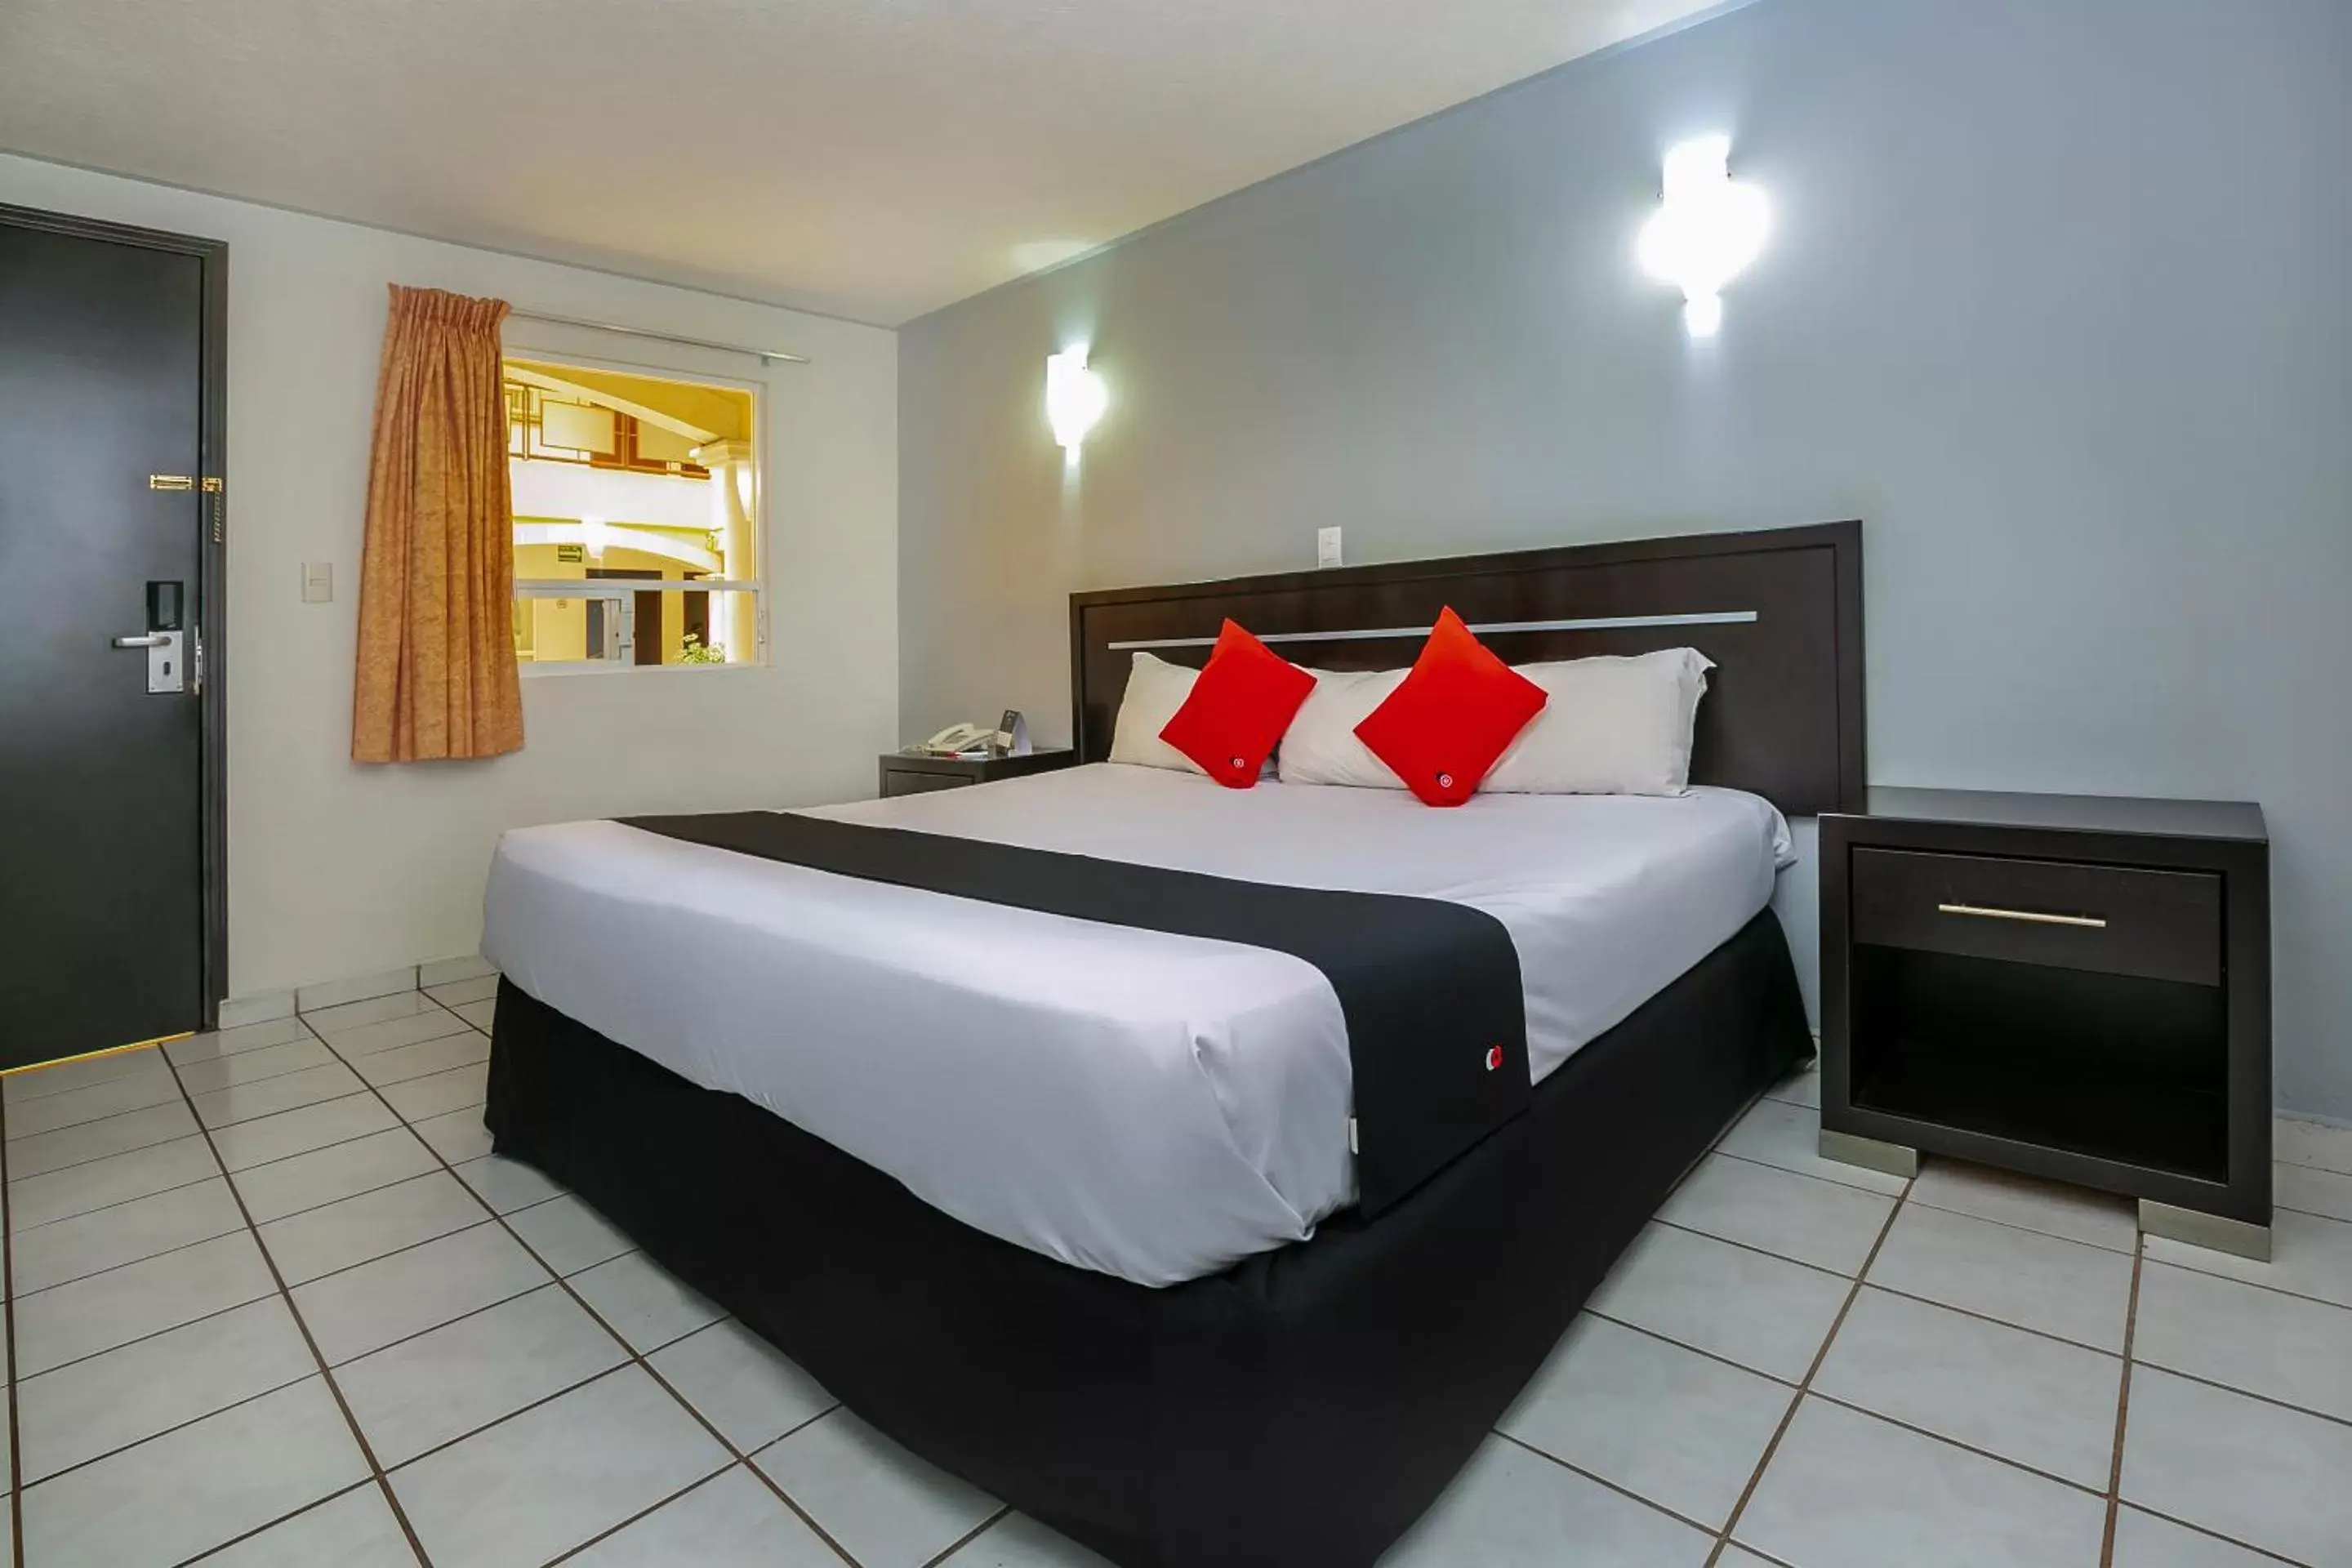 Bedroom, Bed in Capital O Hotel Victoria Morelia